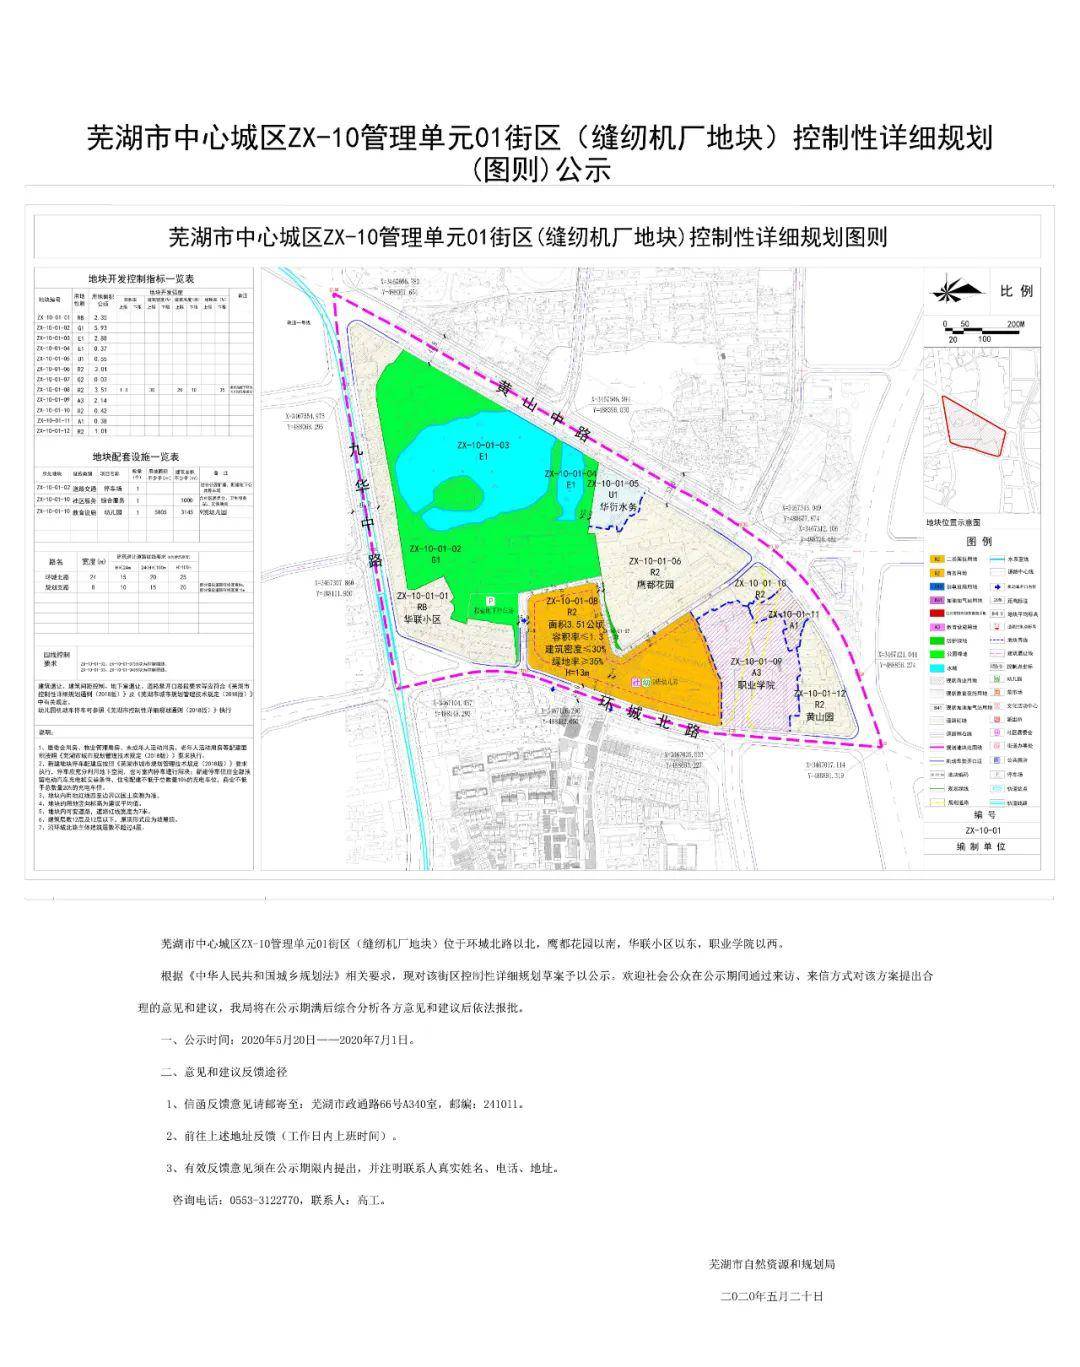 芜湖市中心这些地块或将迎来土拍!地块详细规划曝光!